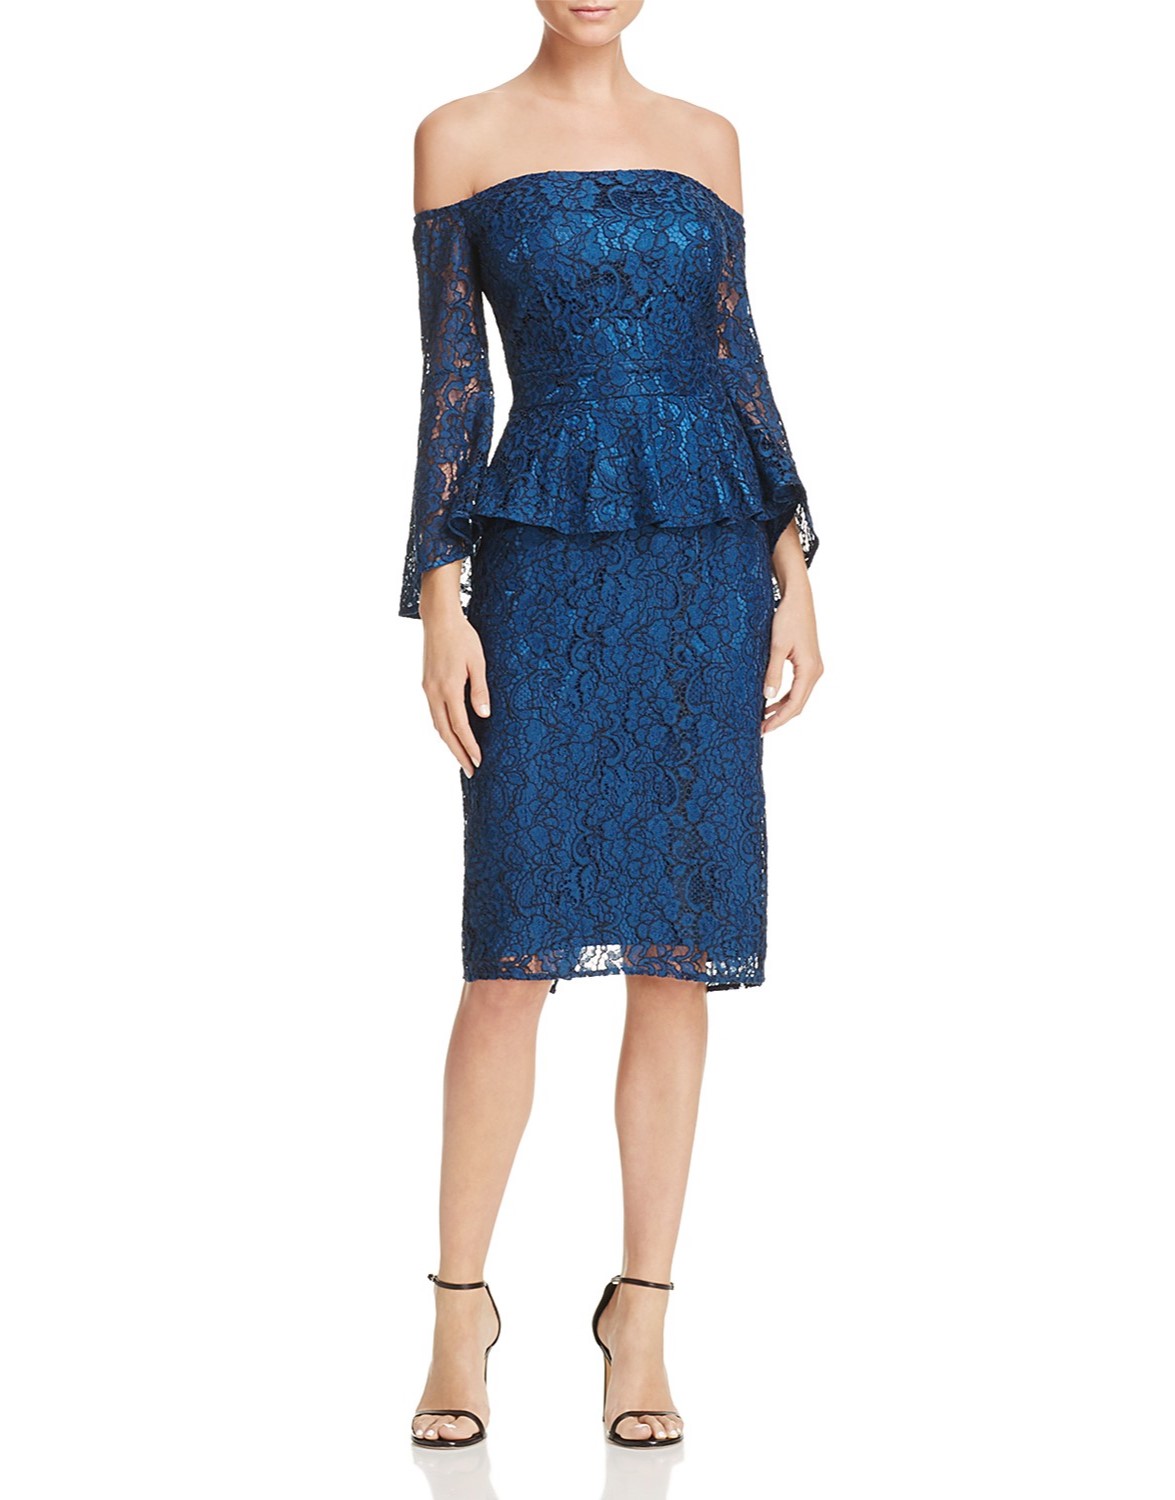 Peplum Off-Shoulder Blue Dress Lace (LSS) -